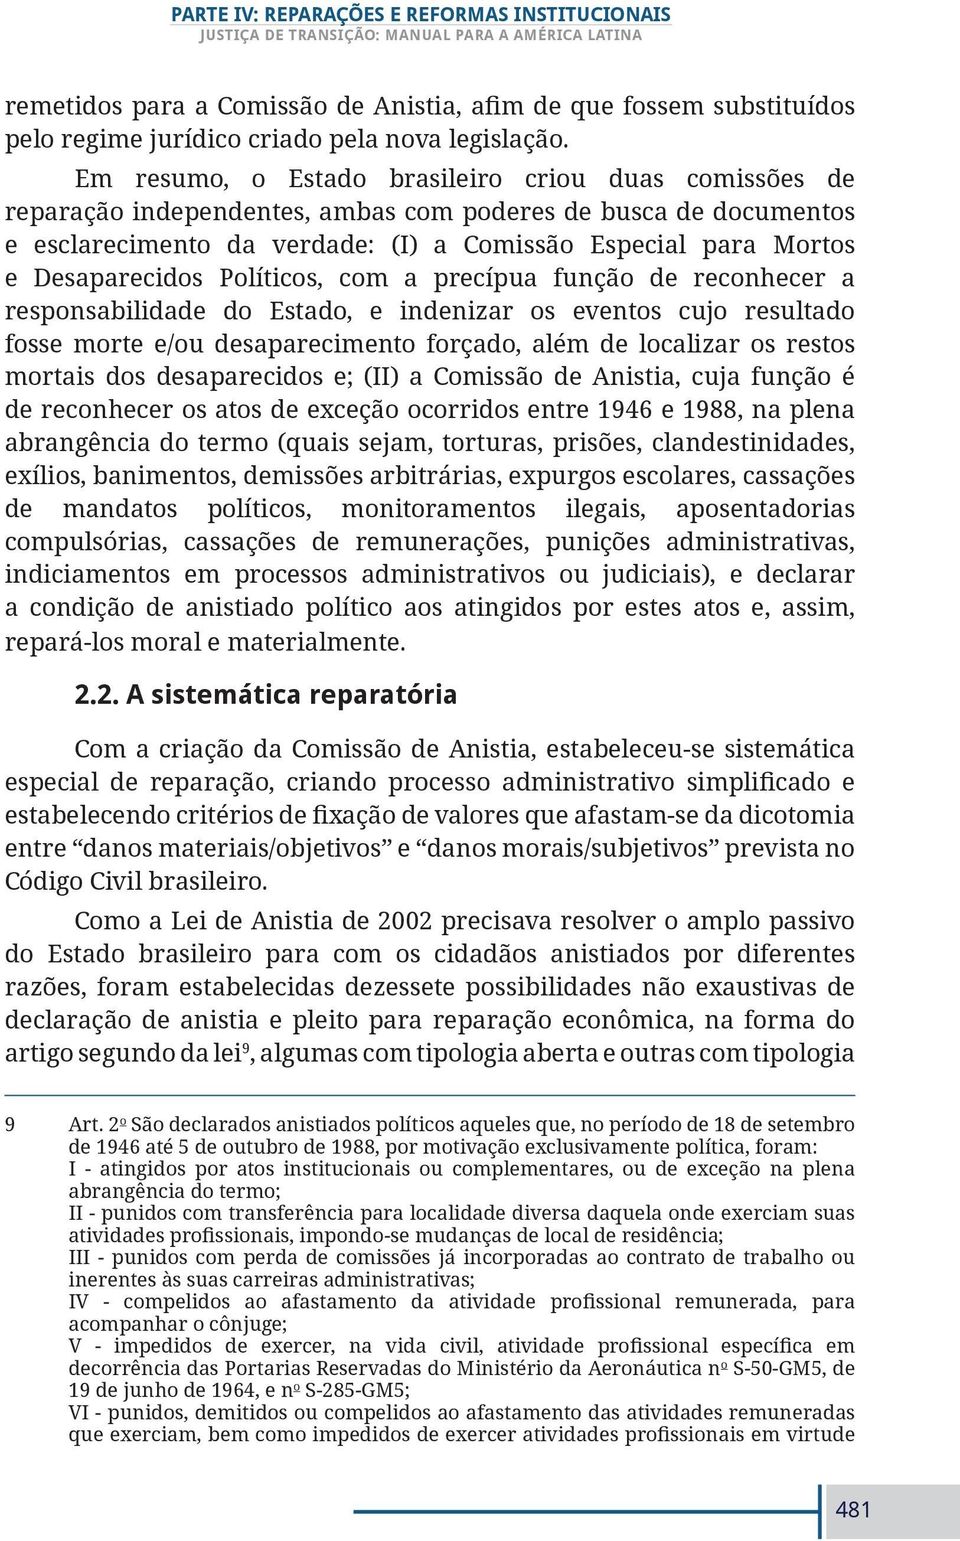 Em rsumo, o Estado brasiliro criou duas comissõs d rparação indpndnts, ambas com podrs d busca d documntos sclarcimnto da vrdad: (I) a Comissão Espcial para Mortos Dsaparcidos Políticos, com a